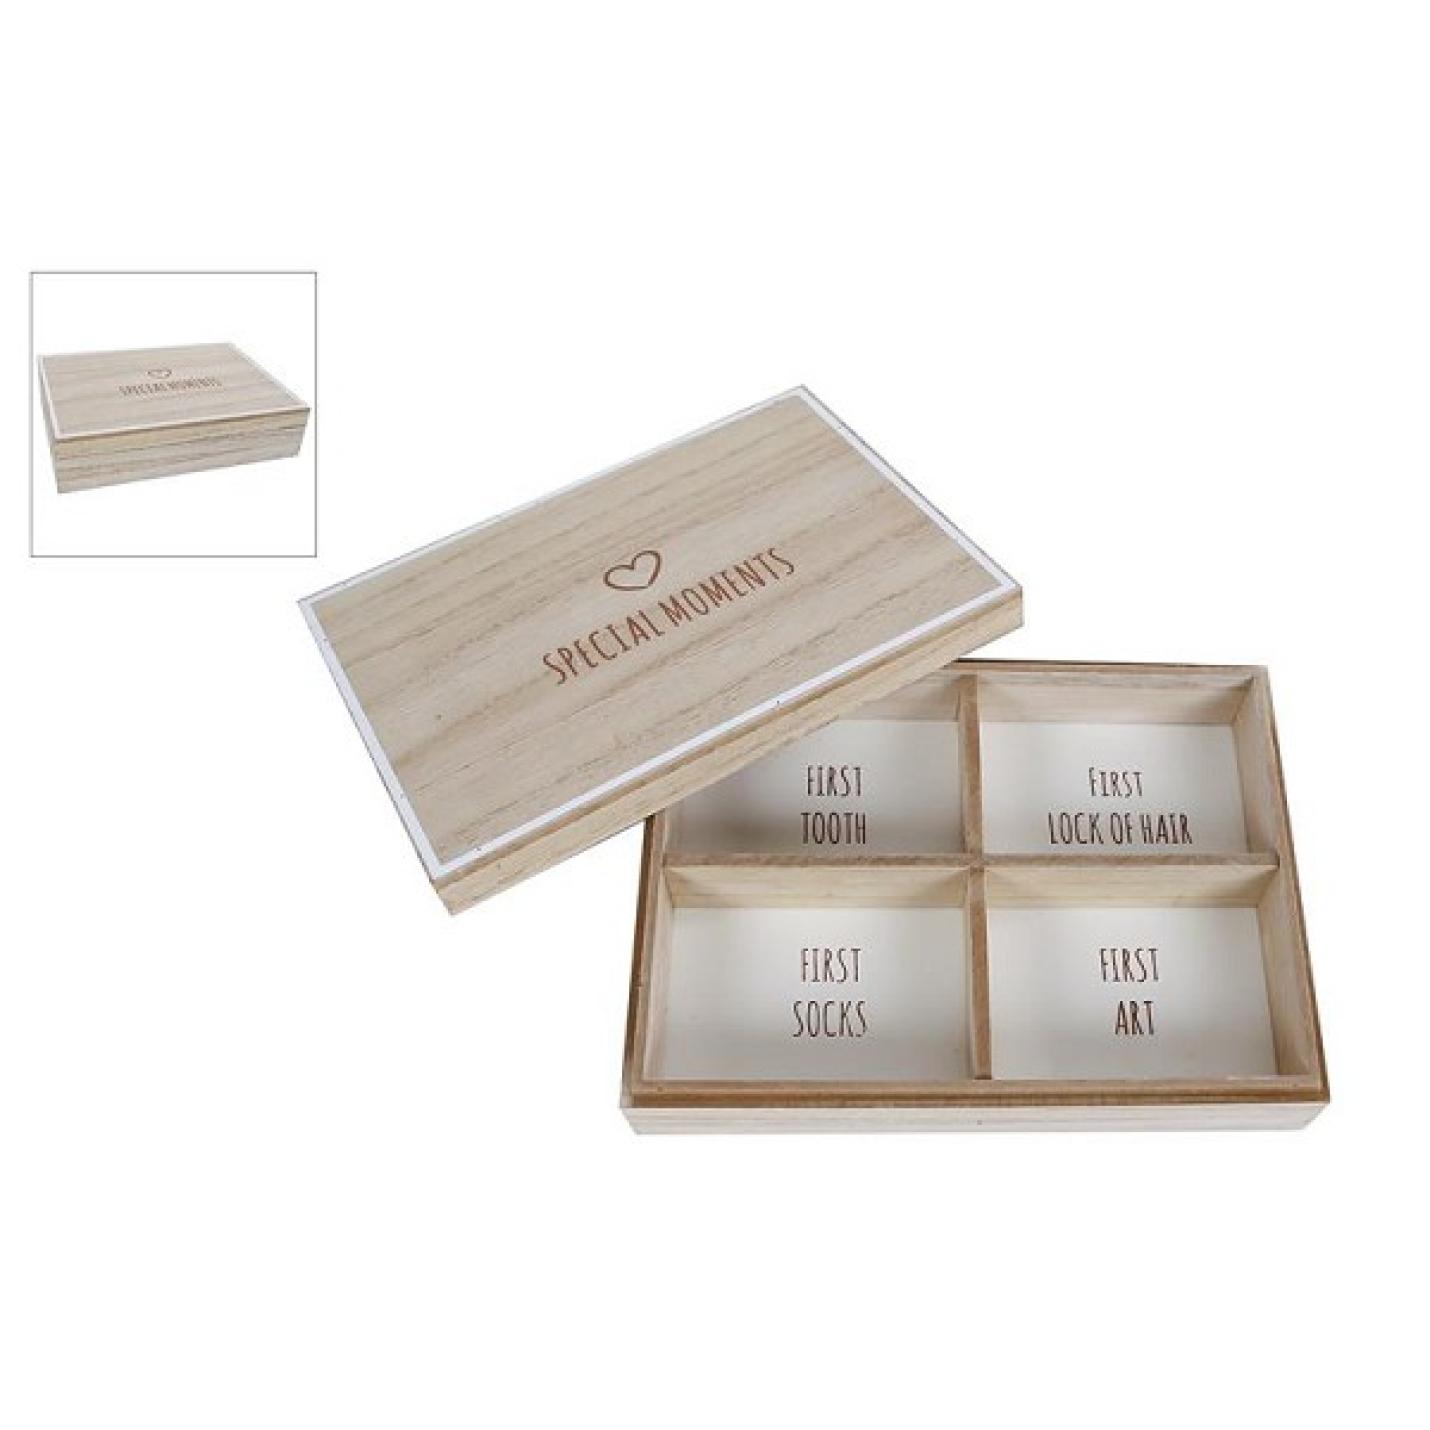 Opbergdoosje hout vierkant doosje met 4 vakjes met wit papiertje erin en 1 houten deksel met witte rand